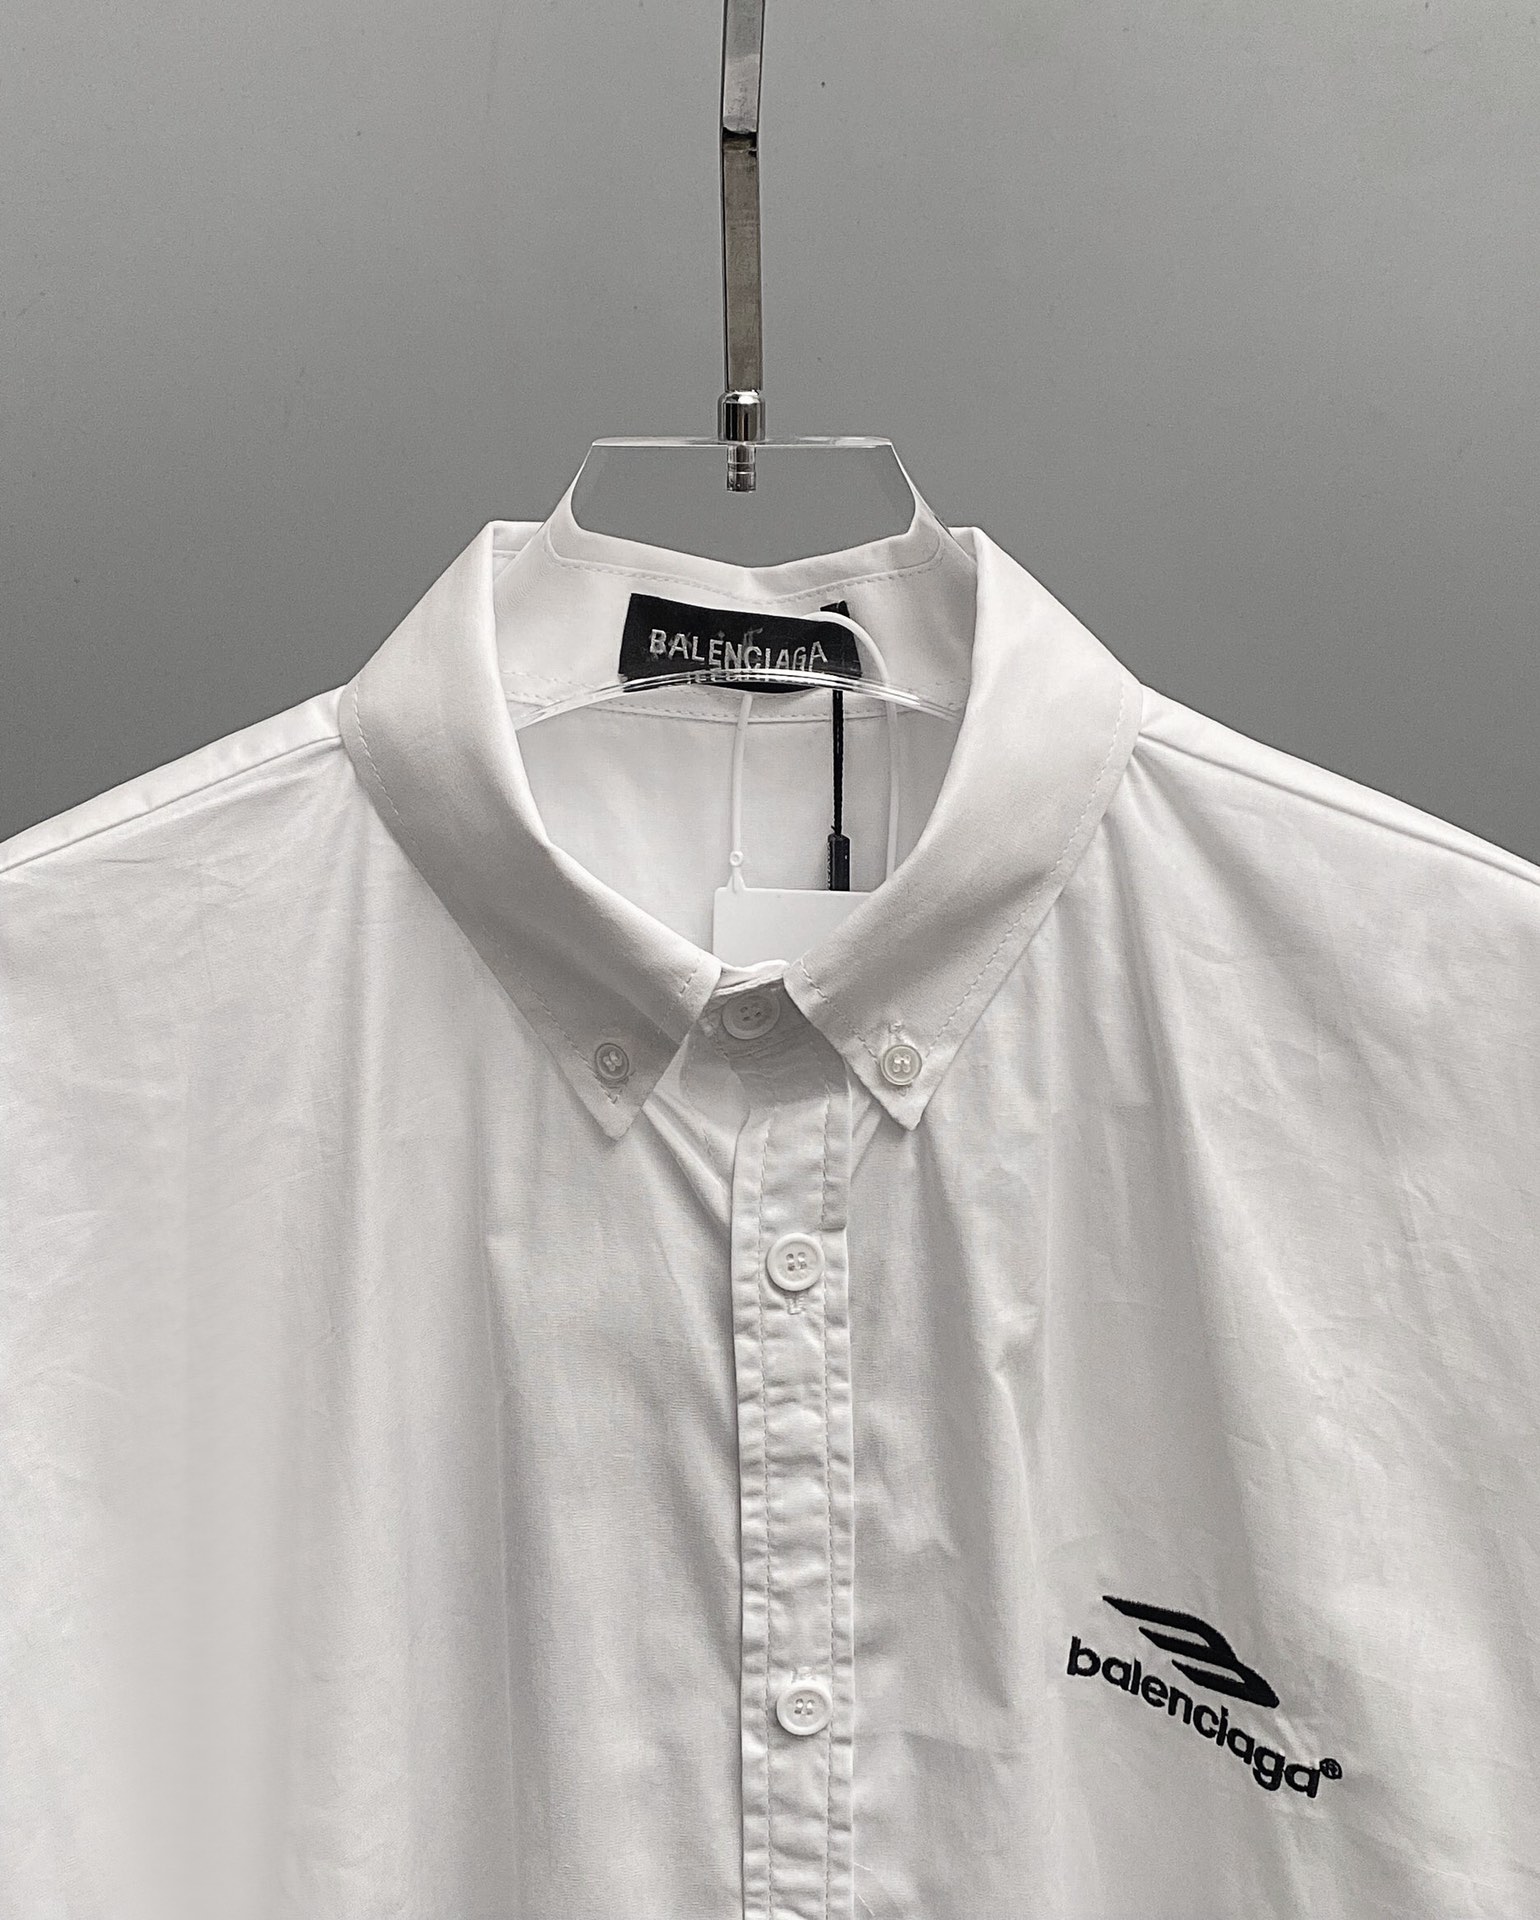 バレンシアガtシャツ 値段偽物 シャツ トップス カジュアル 柔らかい 半袖 ゆったり 男女兼用 ホワイト_3